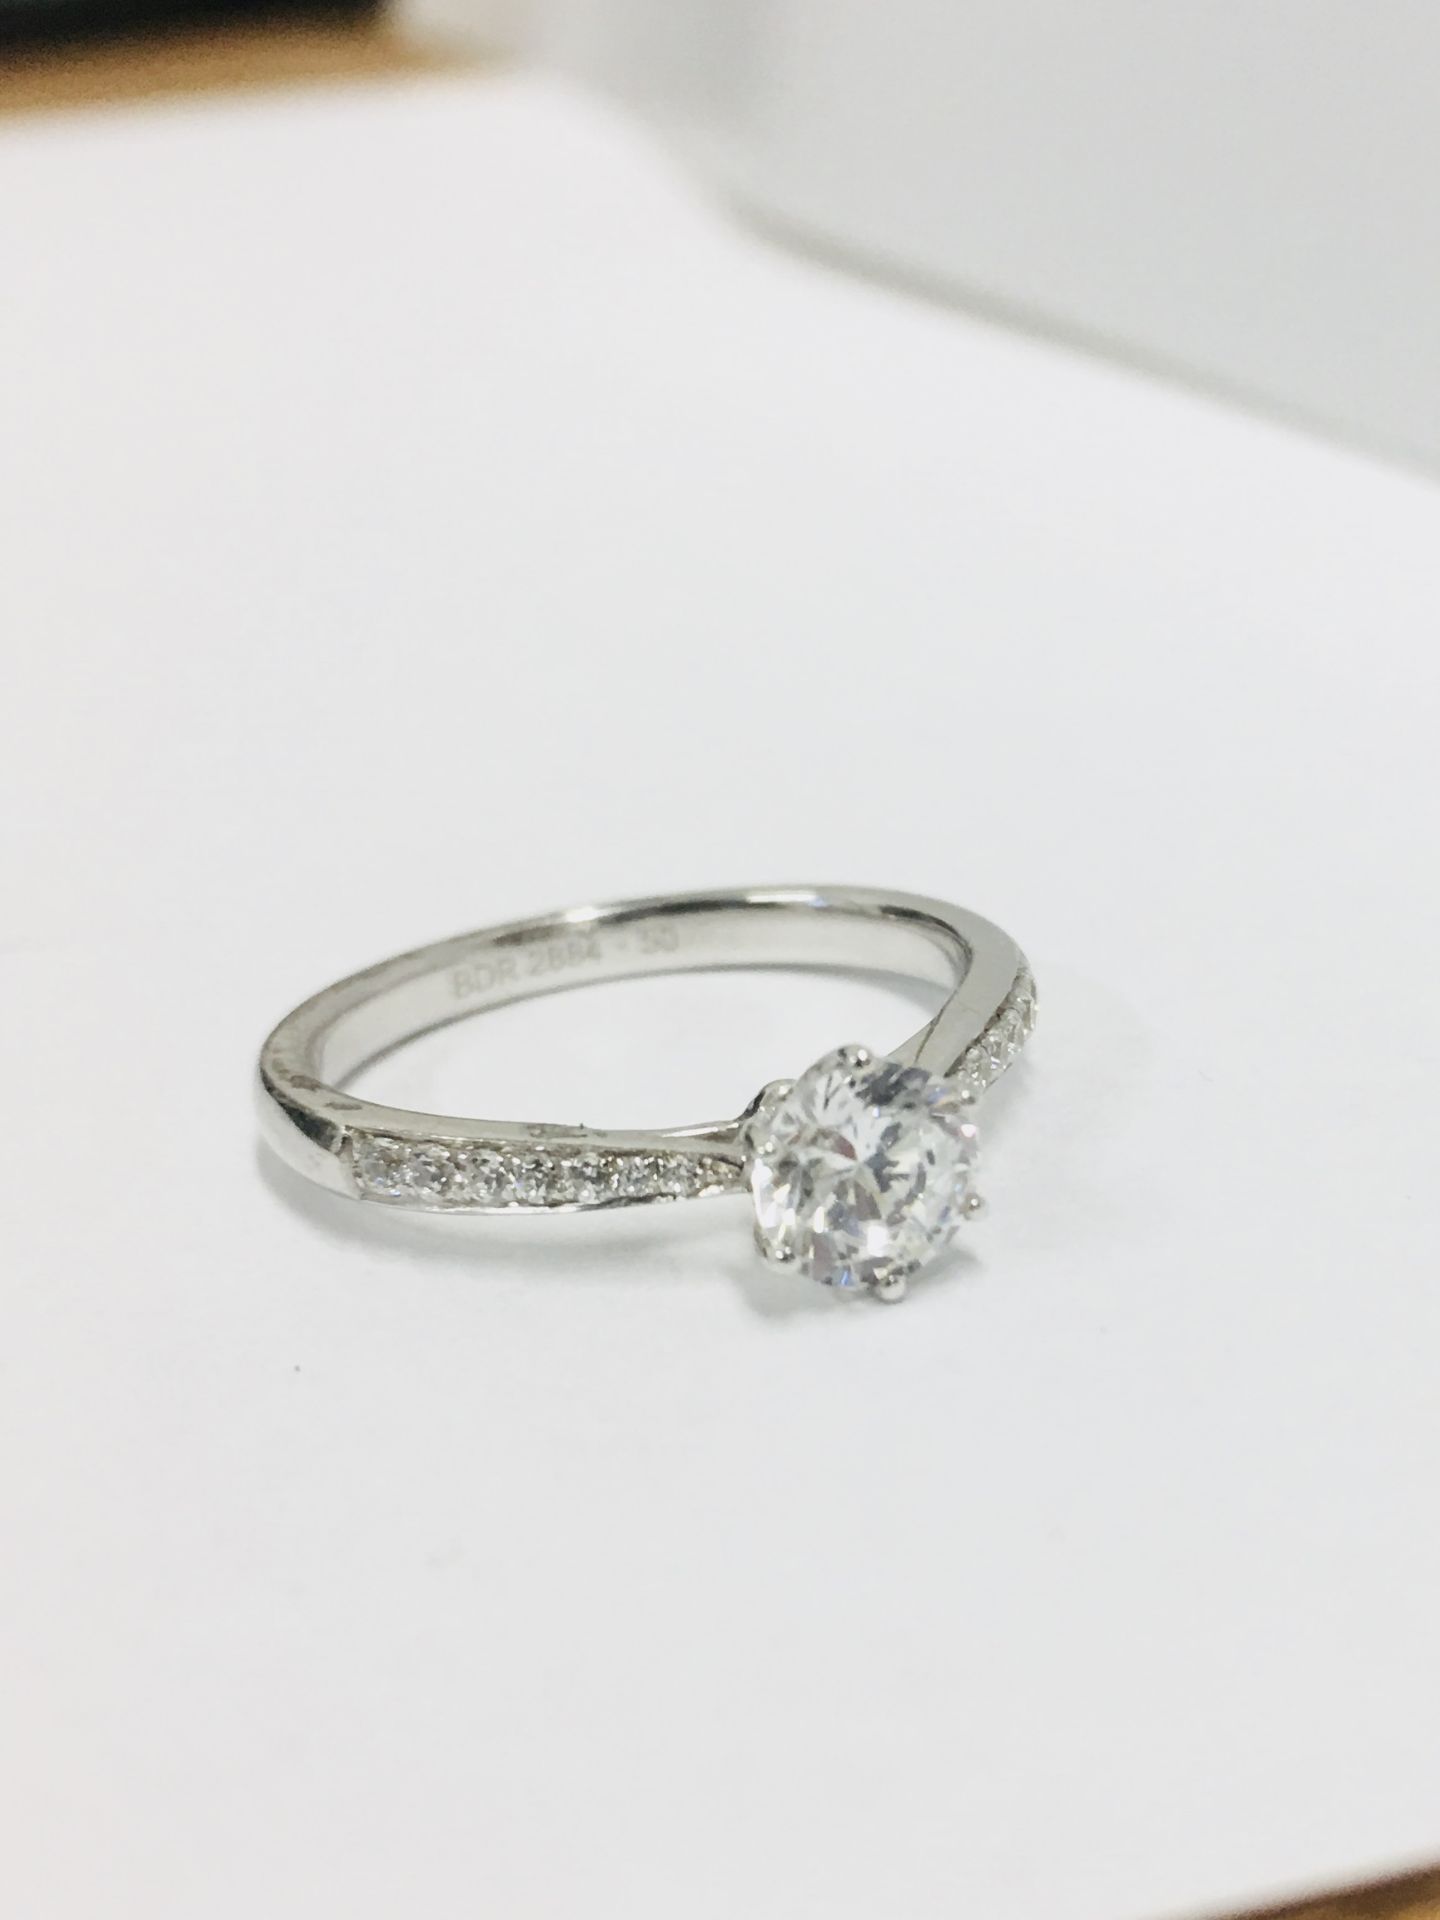 Platinum diamond solitaire ring,050ct brilliant cut diamond h colour vs clarity(clarity enhanced), - Image 4 of 4